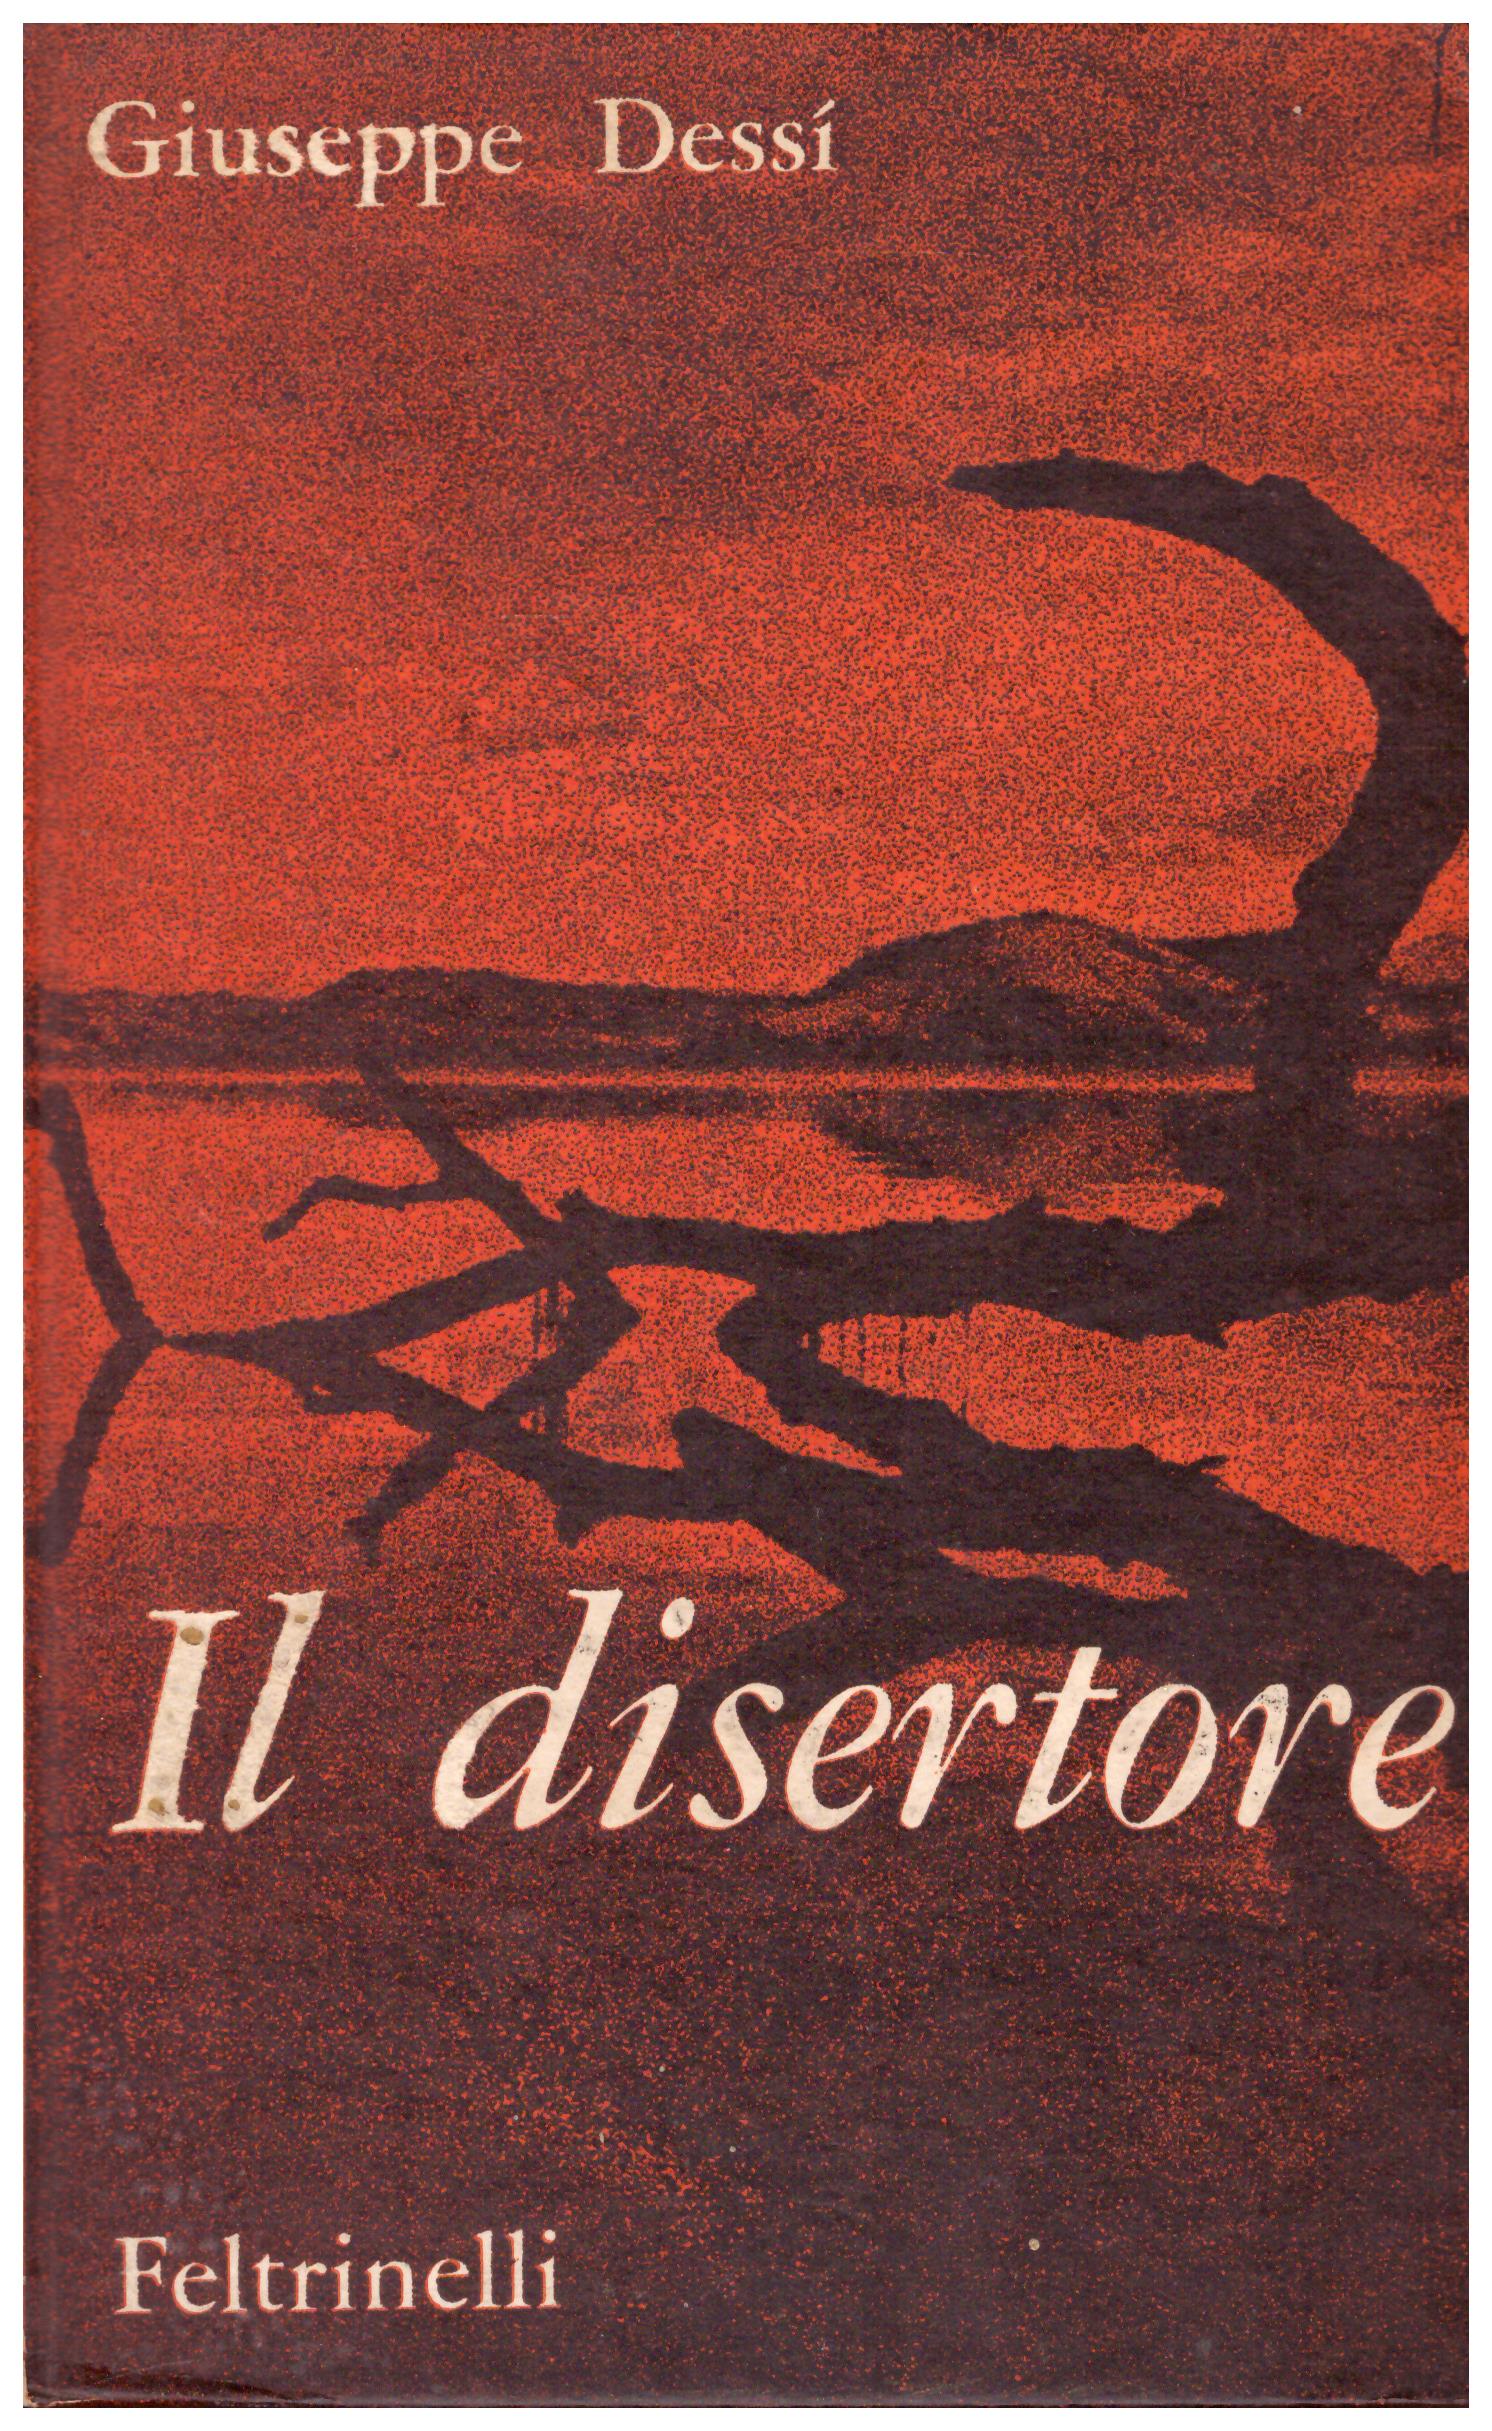 Titolo: Il disertore Autore: Giuseppe Dessi Editore: Feltrinelli, 1961